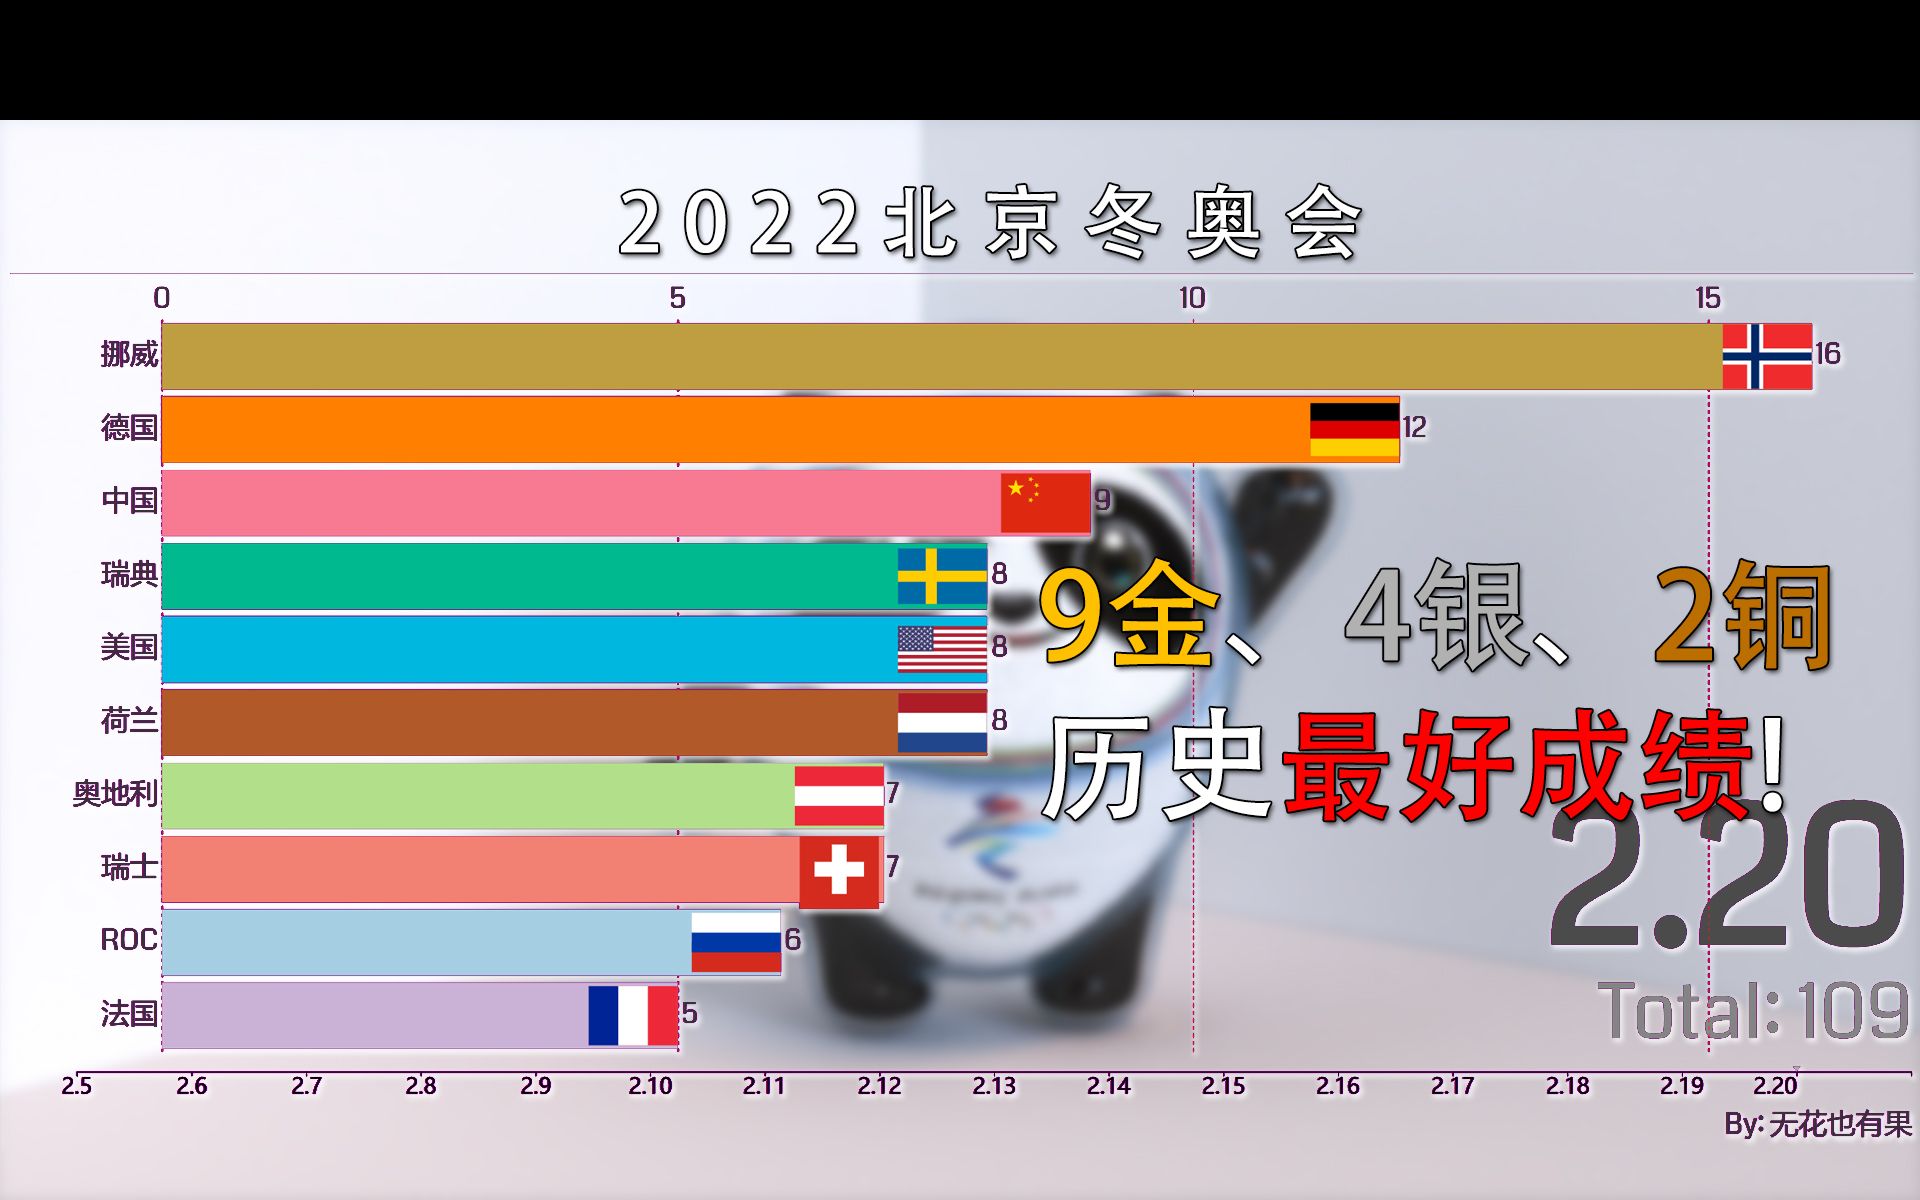 2022北京冬奥会奖牌数据可视化